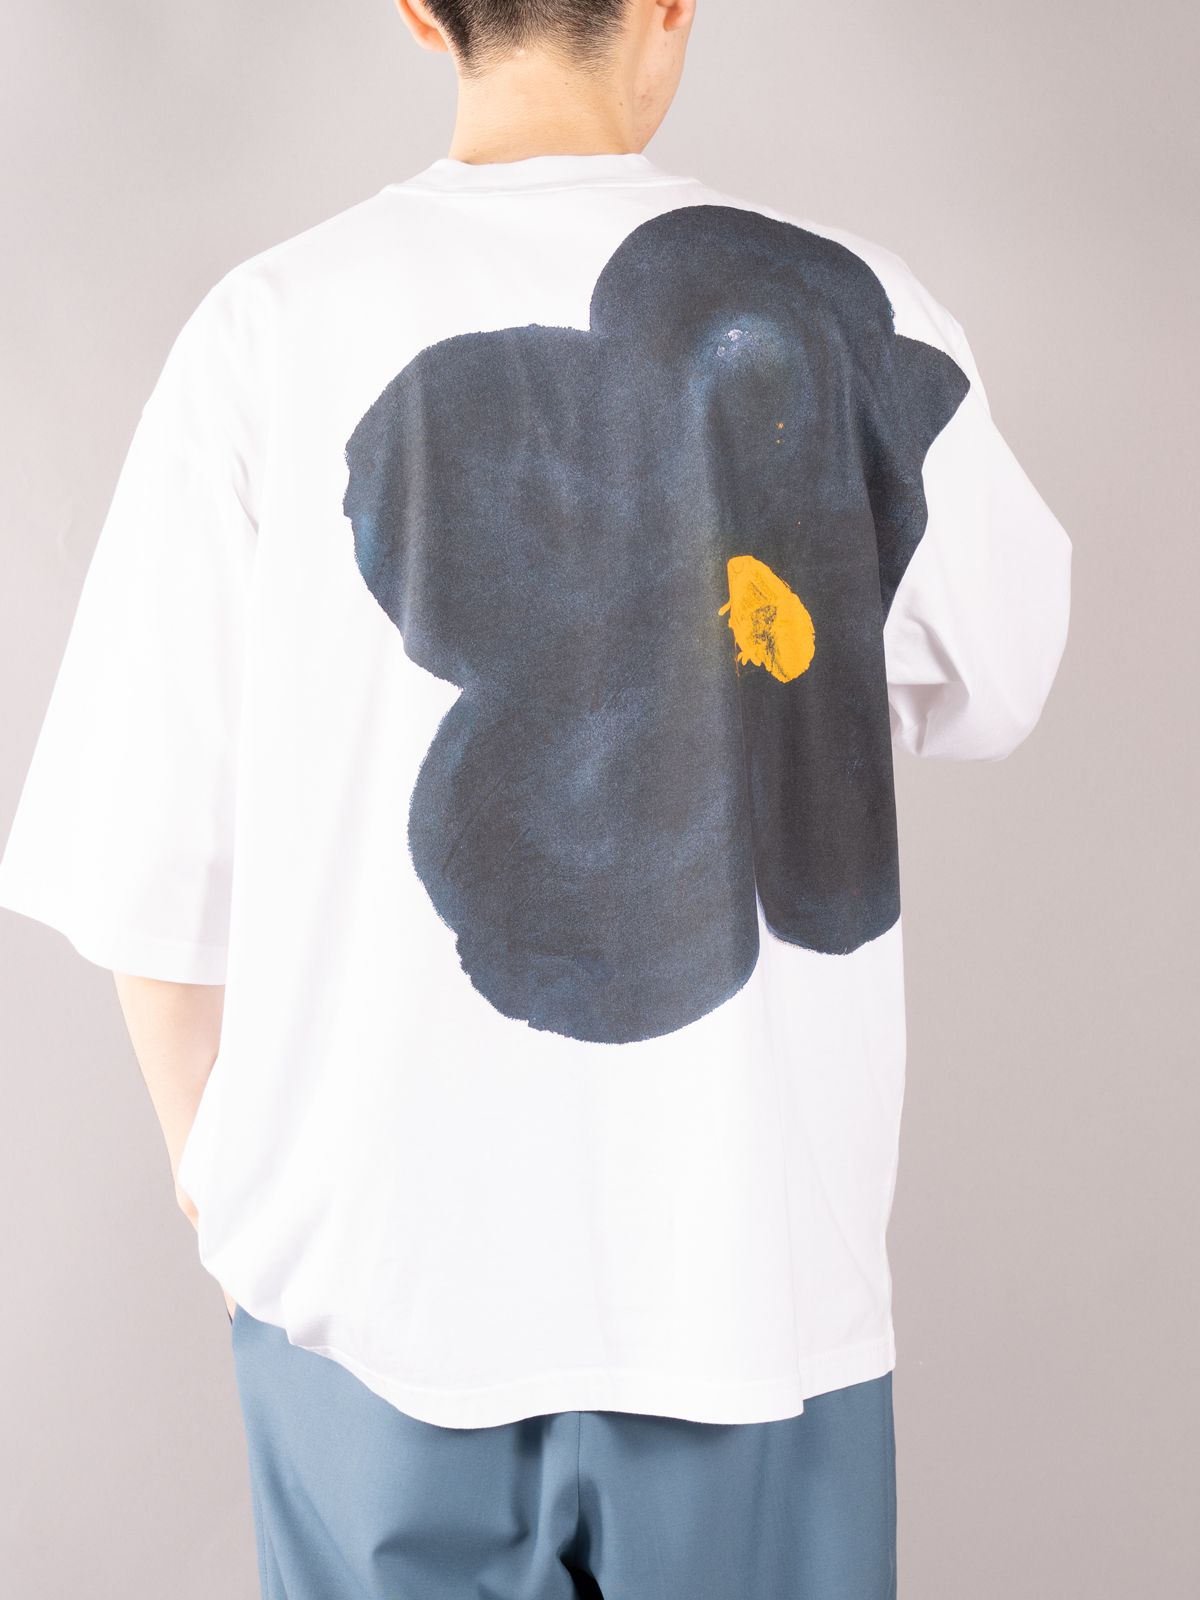 ラスト1点 / ブラックDAISYプリント ホワイトジャージー製クルーネックTシャツ (ホワイト) - 48